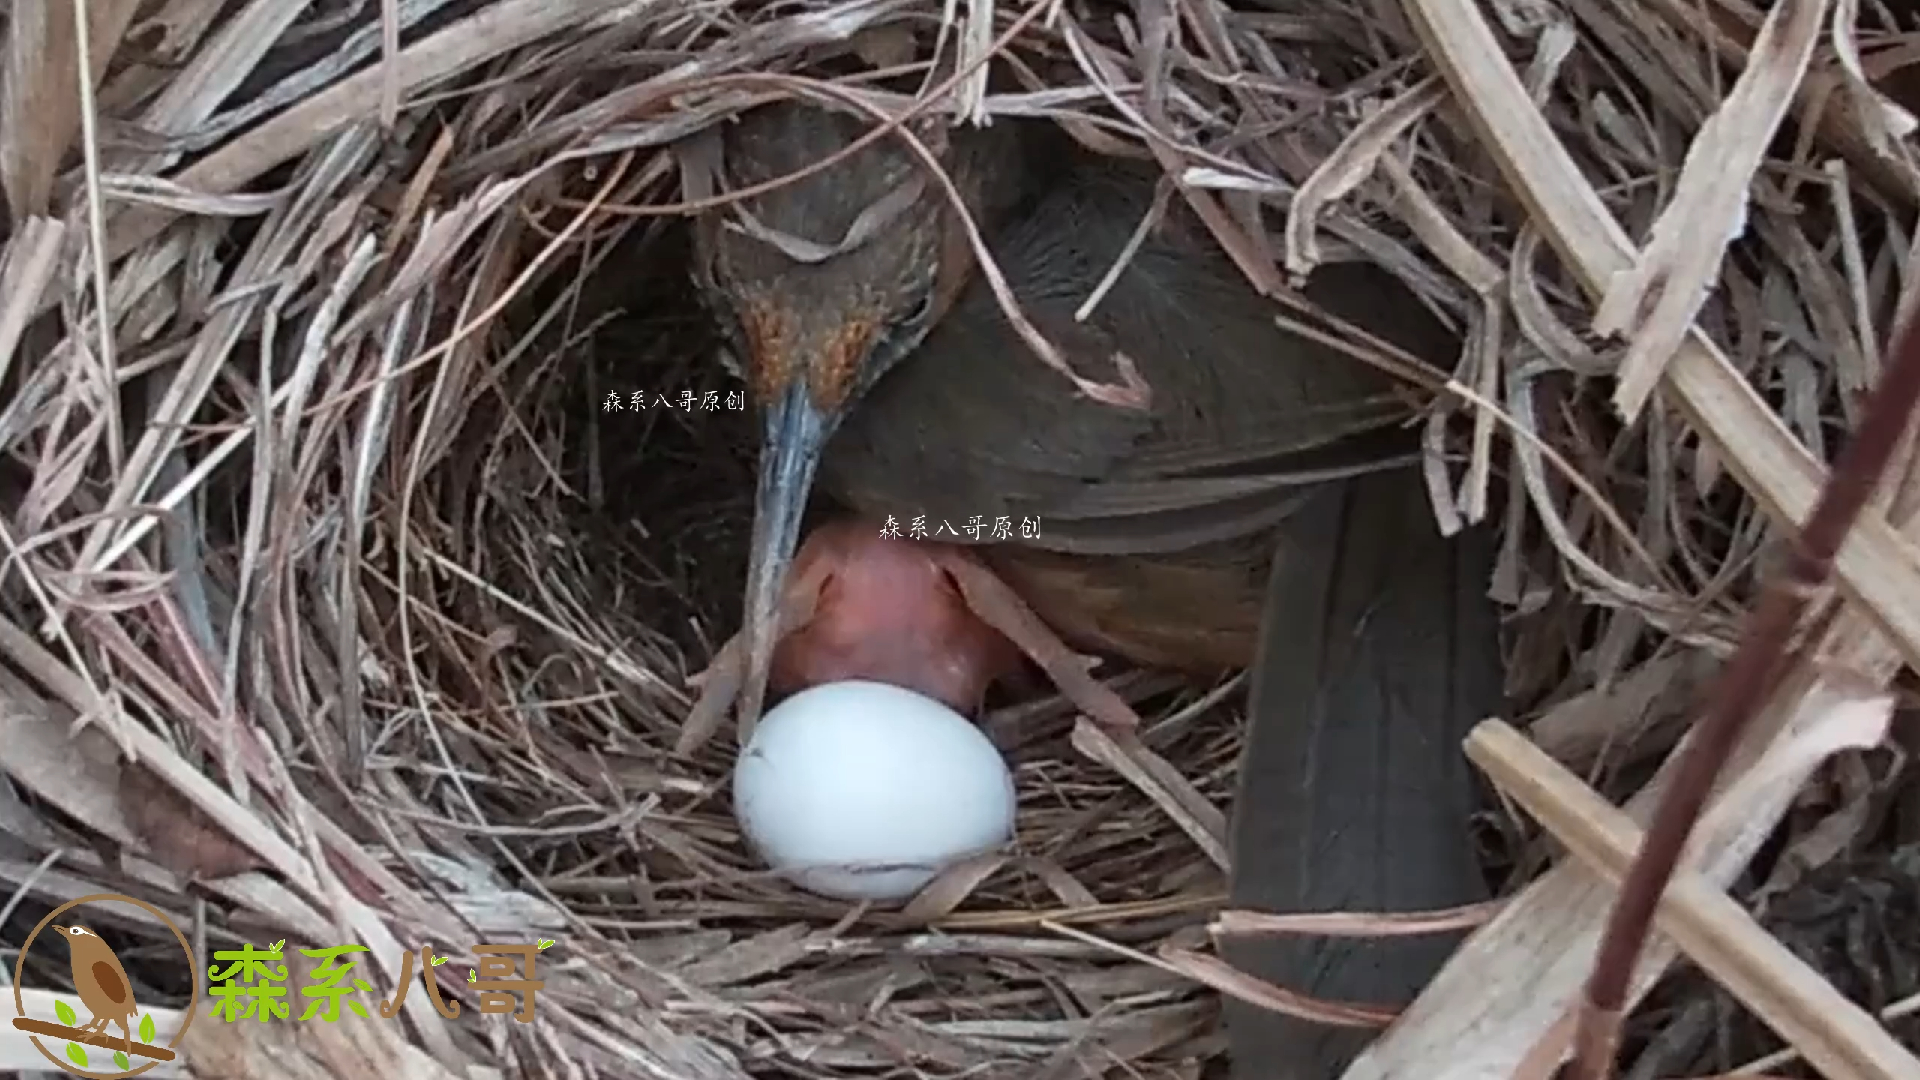 杜鹃鸟把鸟蛋推出去，鸟妈妈的做法让人称赞，非常聪明